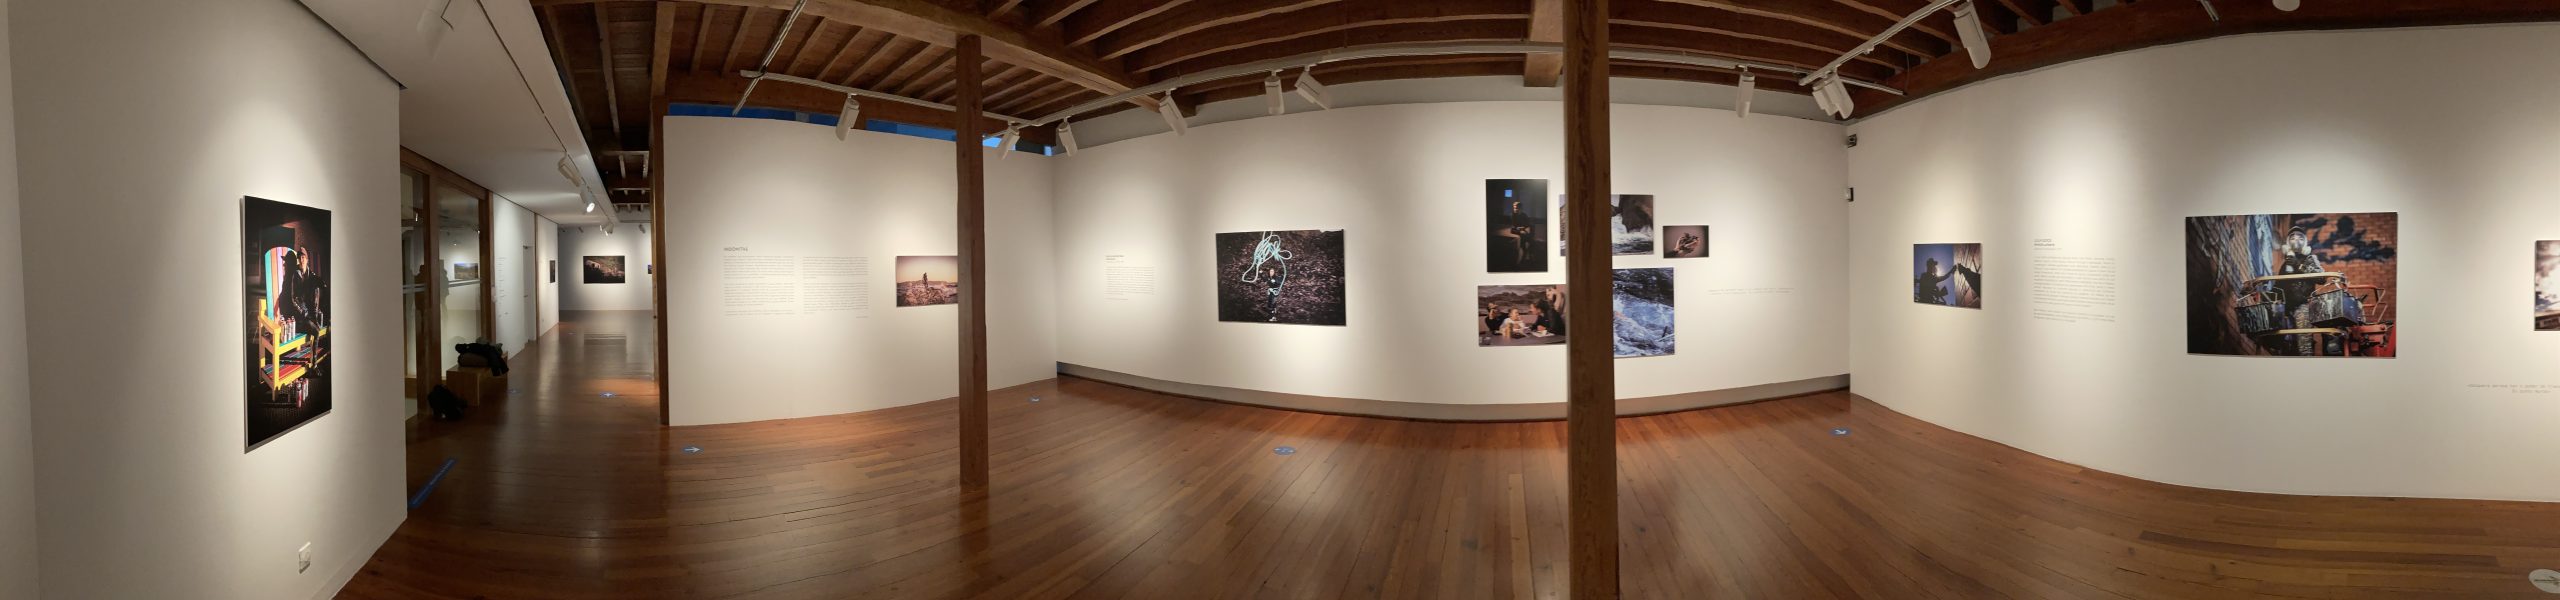 Exposición trabajo de Ofelia de Pablo y Javier Zurita Hakawatifilm